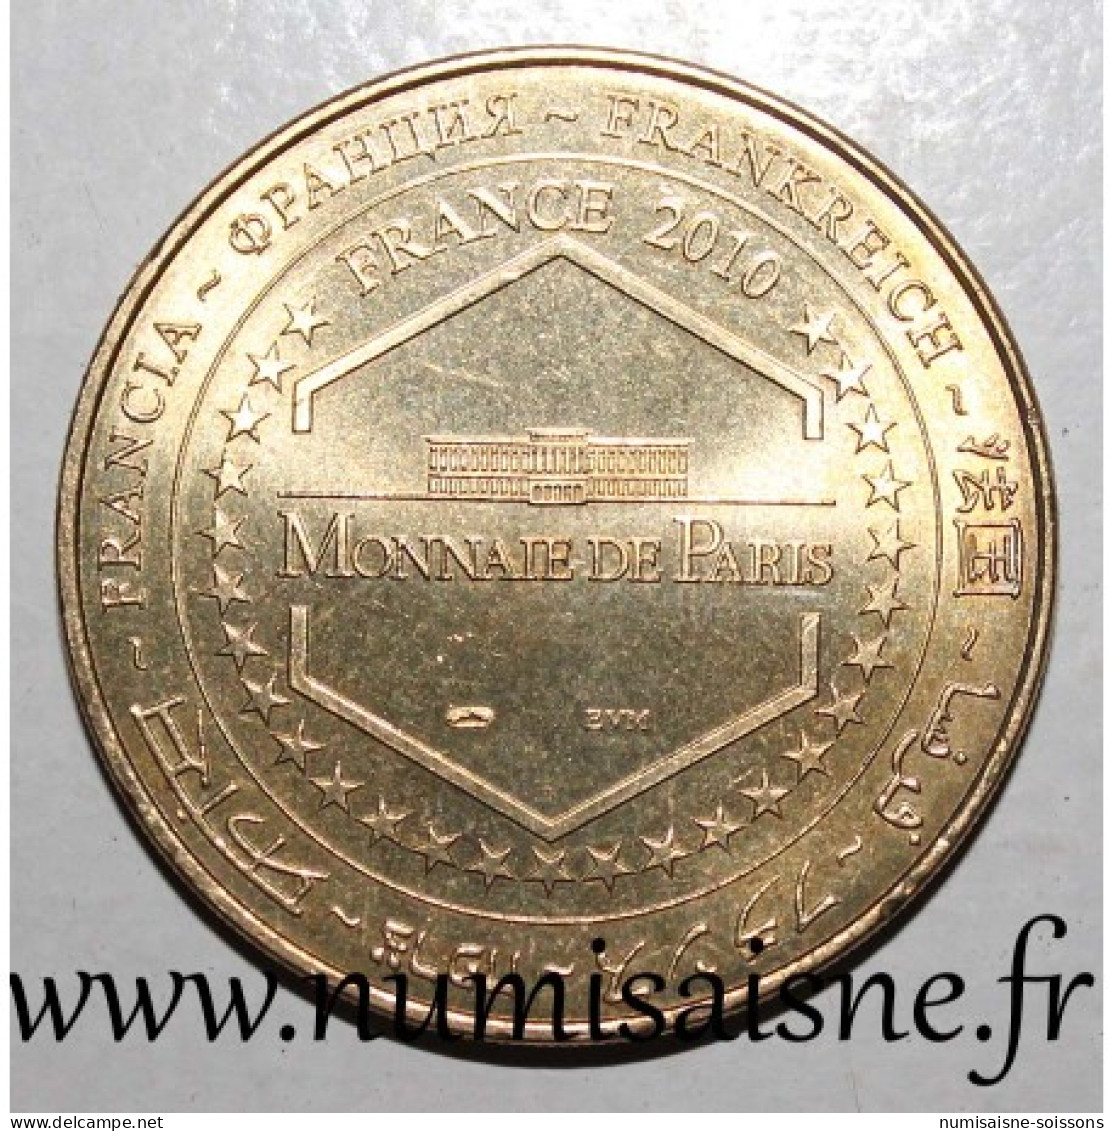 24 - BRANTÔME - SOUFFLEUR DE VERRE - Monnaie De Paris - 2010 - 2010